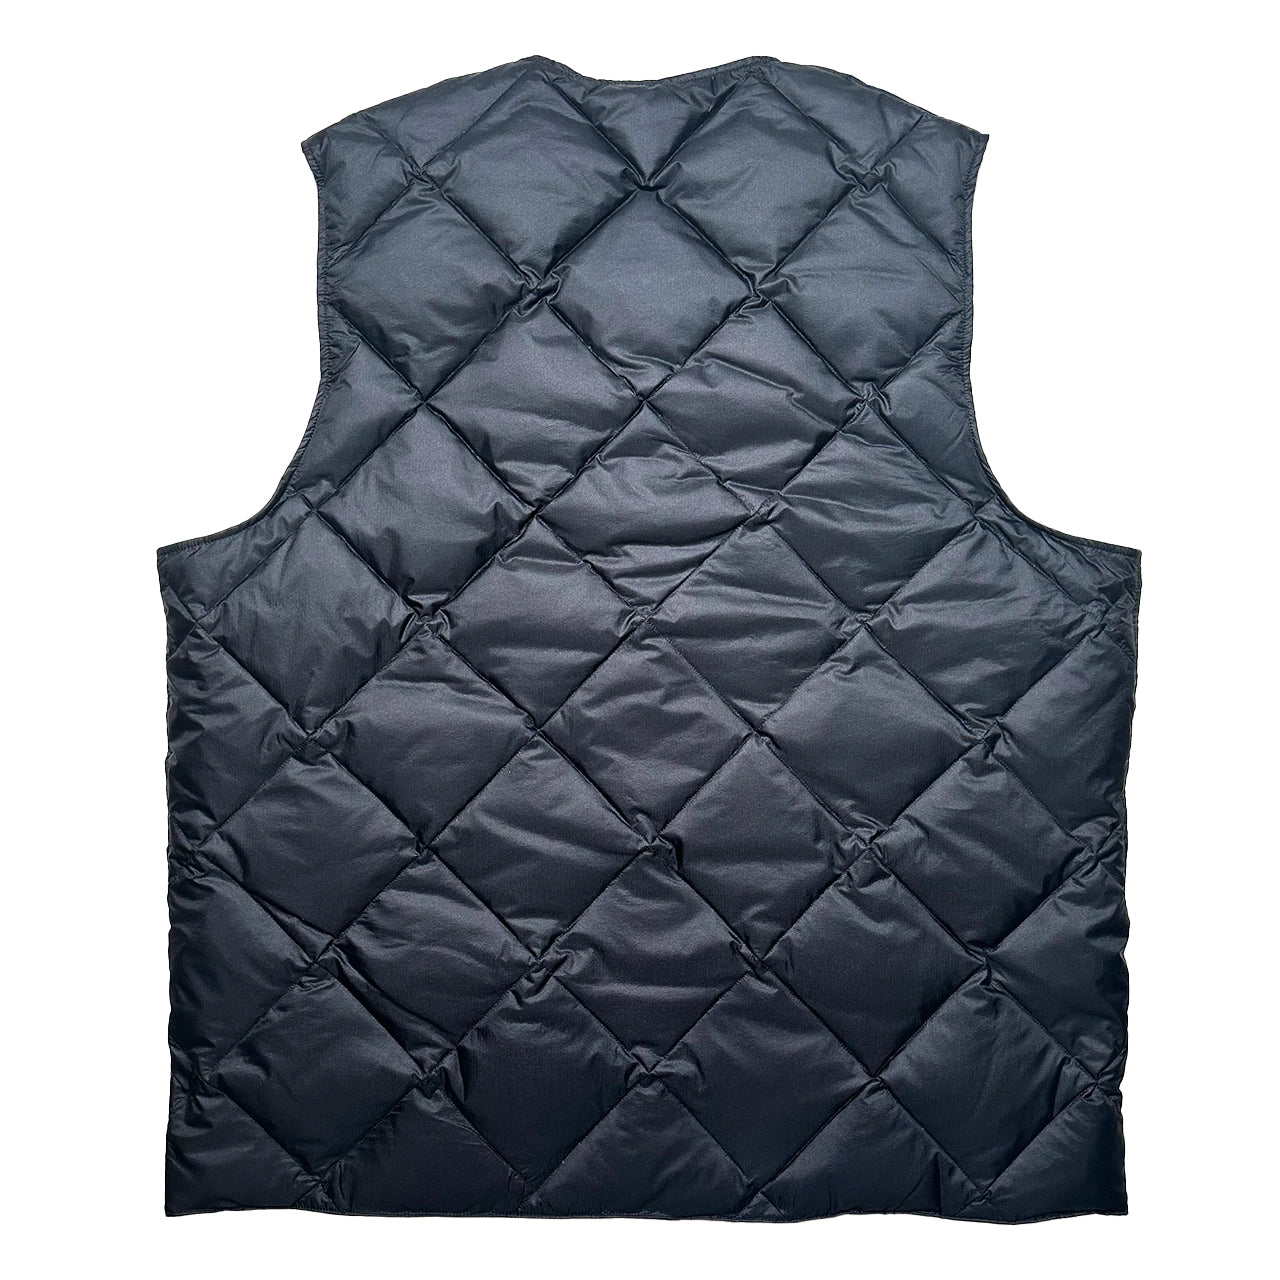 Eddie Bauer / Down Light Insulated Vest